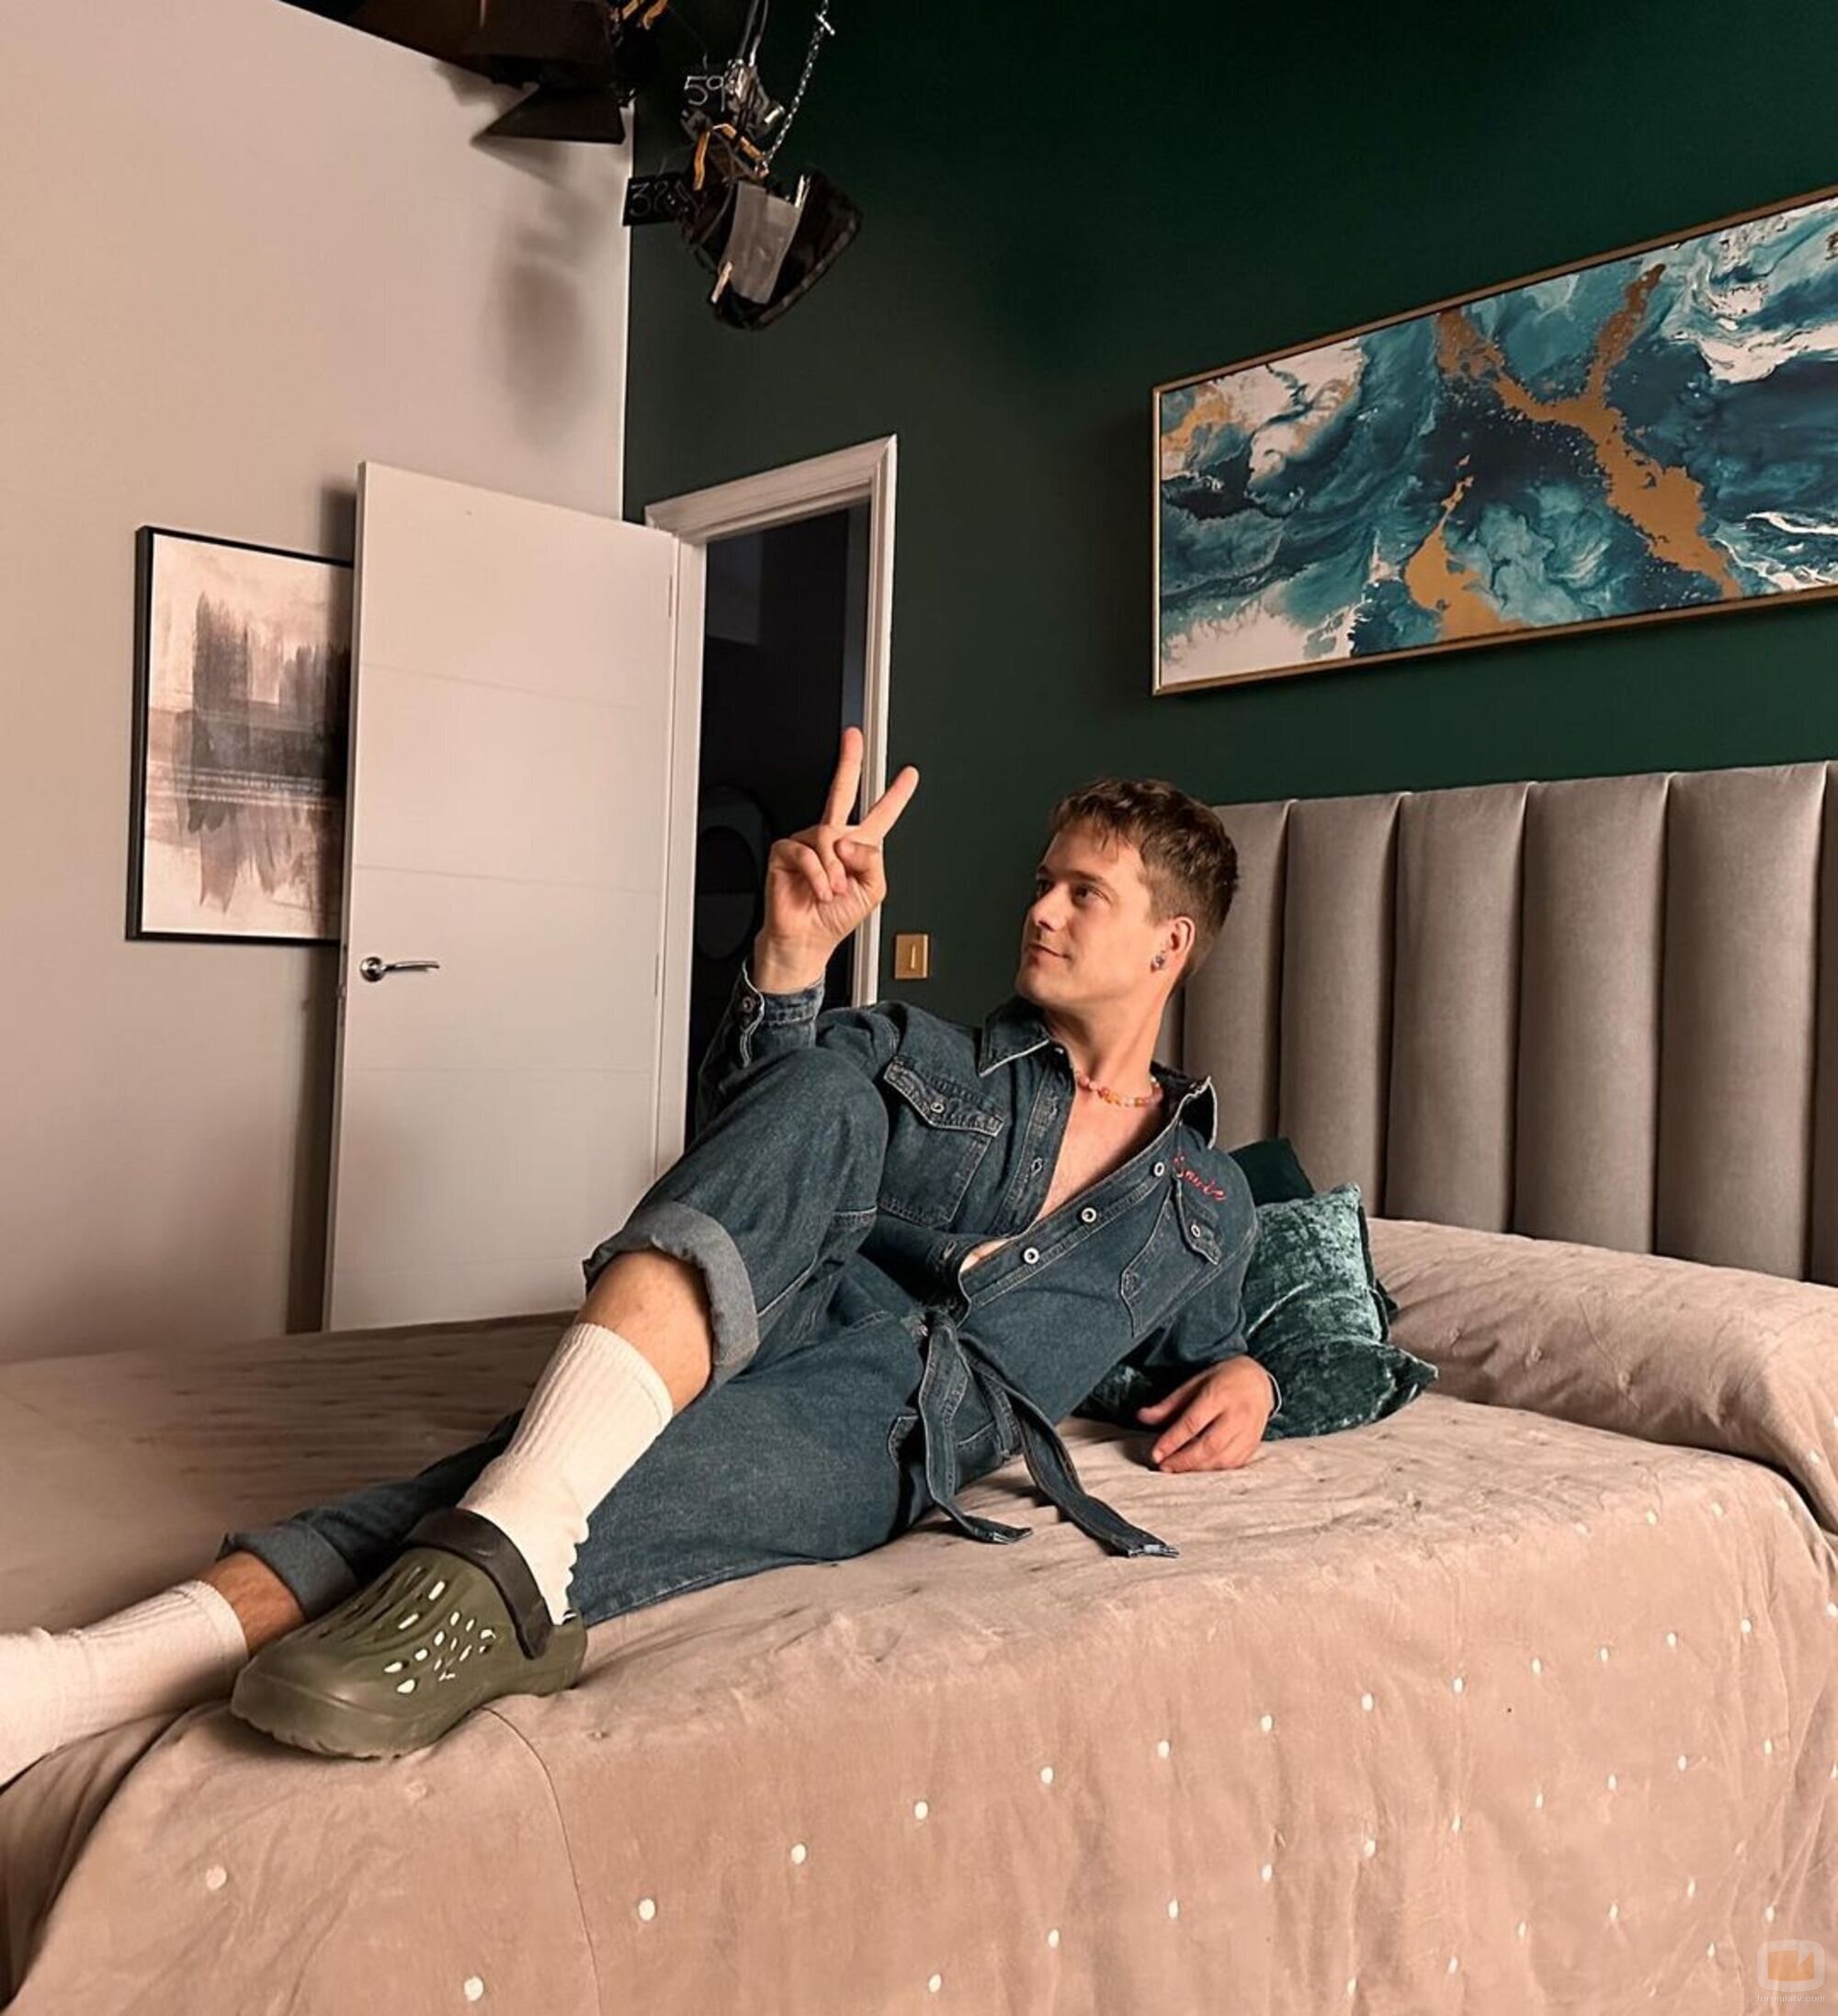 Jaime Riba en la cama de Maite durante el rodaje de la temporada 14 de 'La que se avecina'